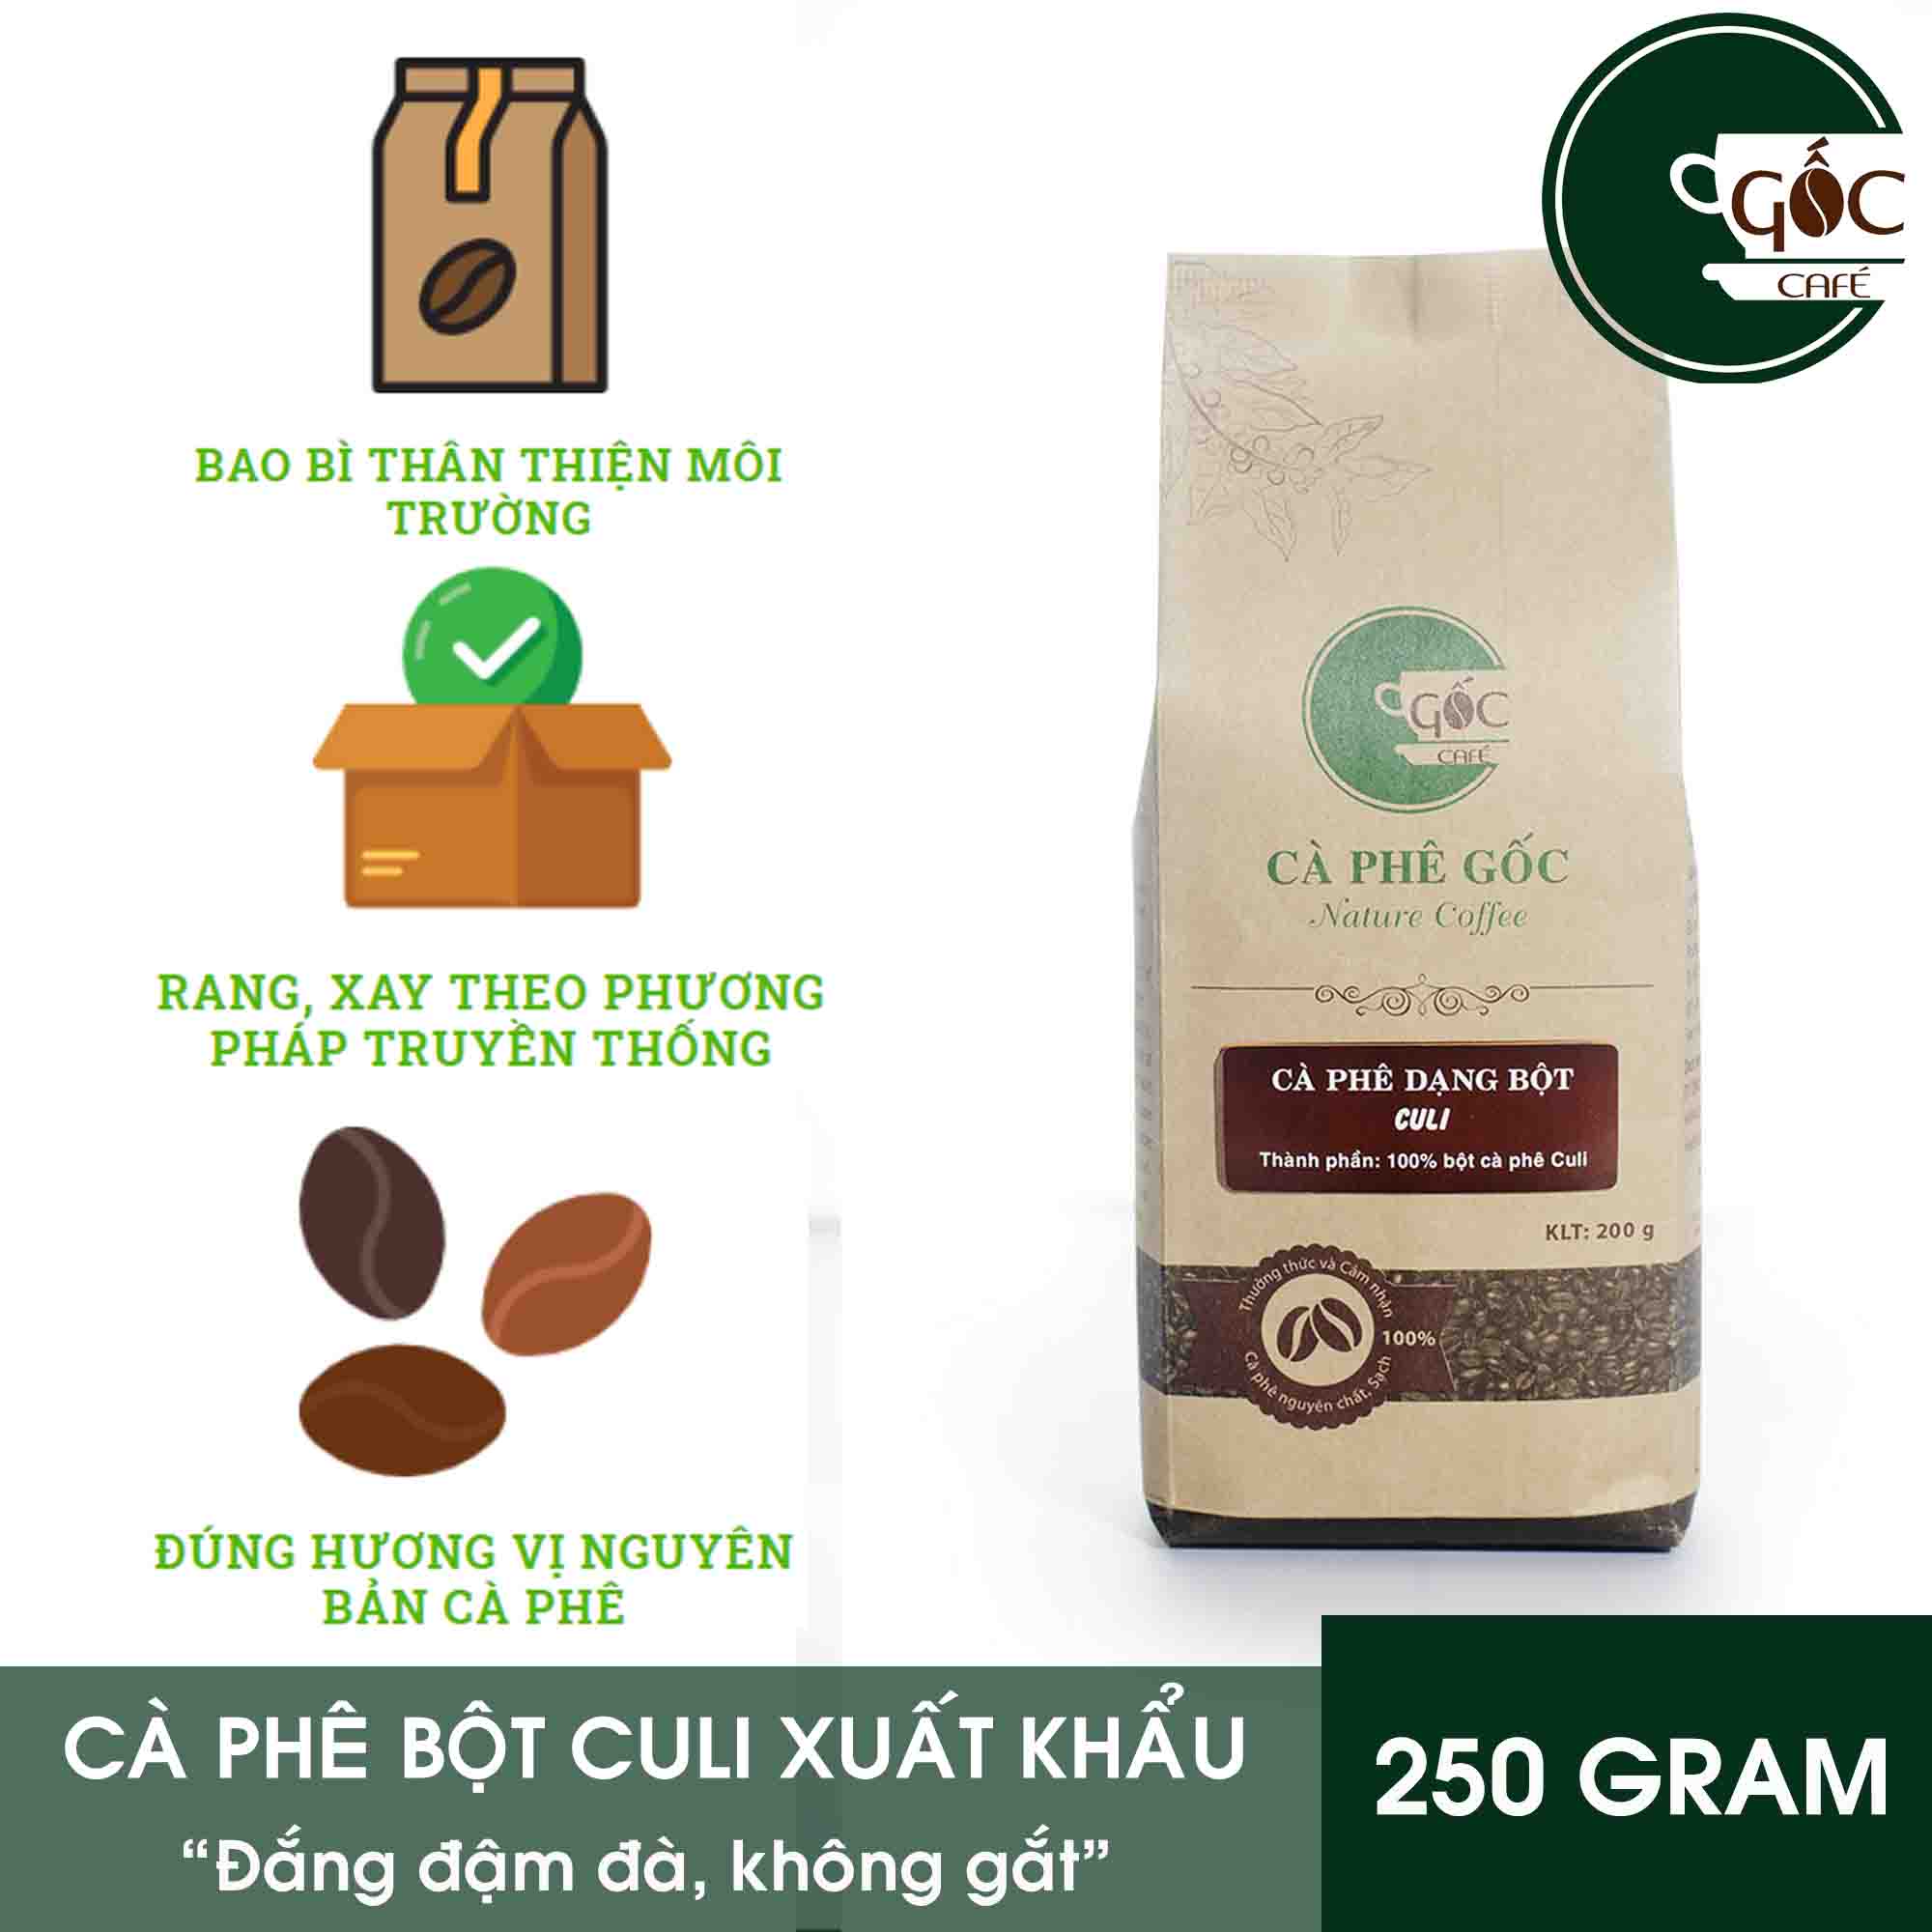 [HCM]Cà phê bột Culi pha phin nguyên chất xuất khẩu 250g CÀ PHÊ GỐC - Cà phê xuất khẩu từ vùng nguyên liệu riêng tự đầu tư Culi đắng đậm đà mà không gắt.